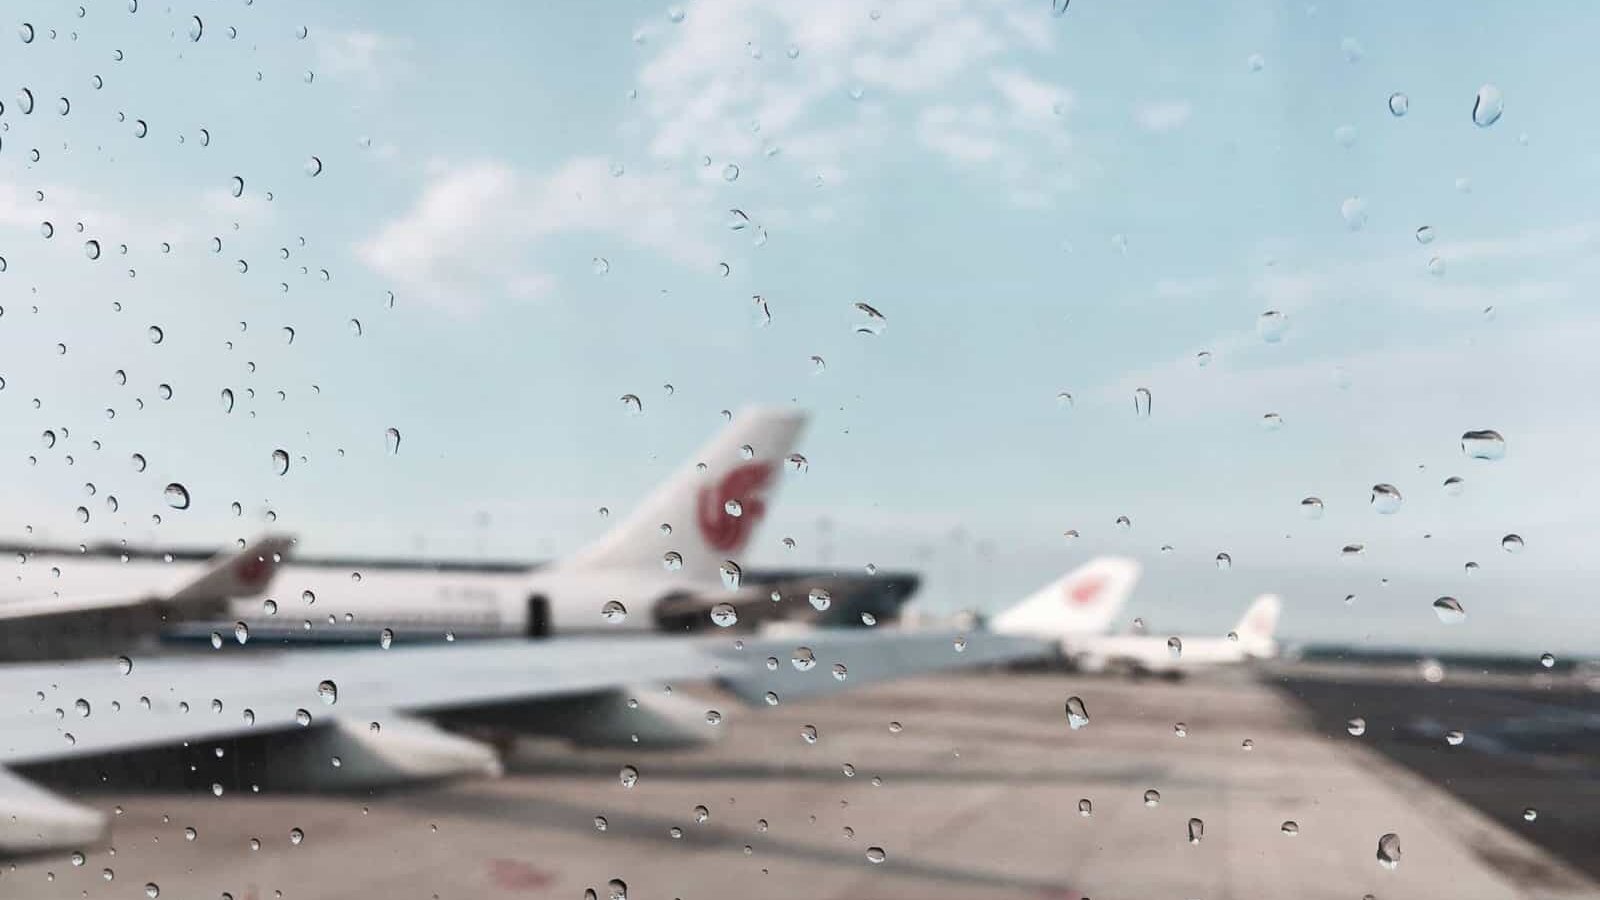 Airplanes through wet window